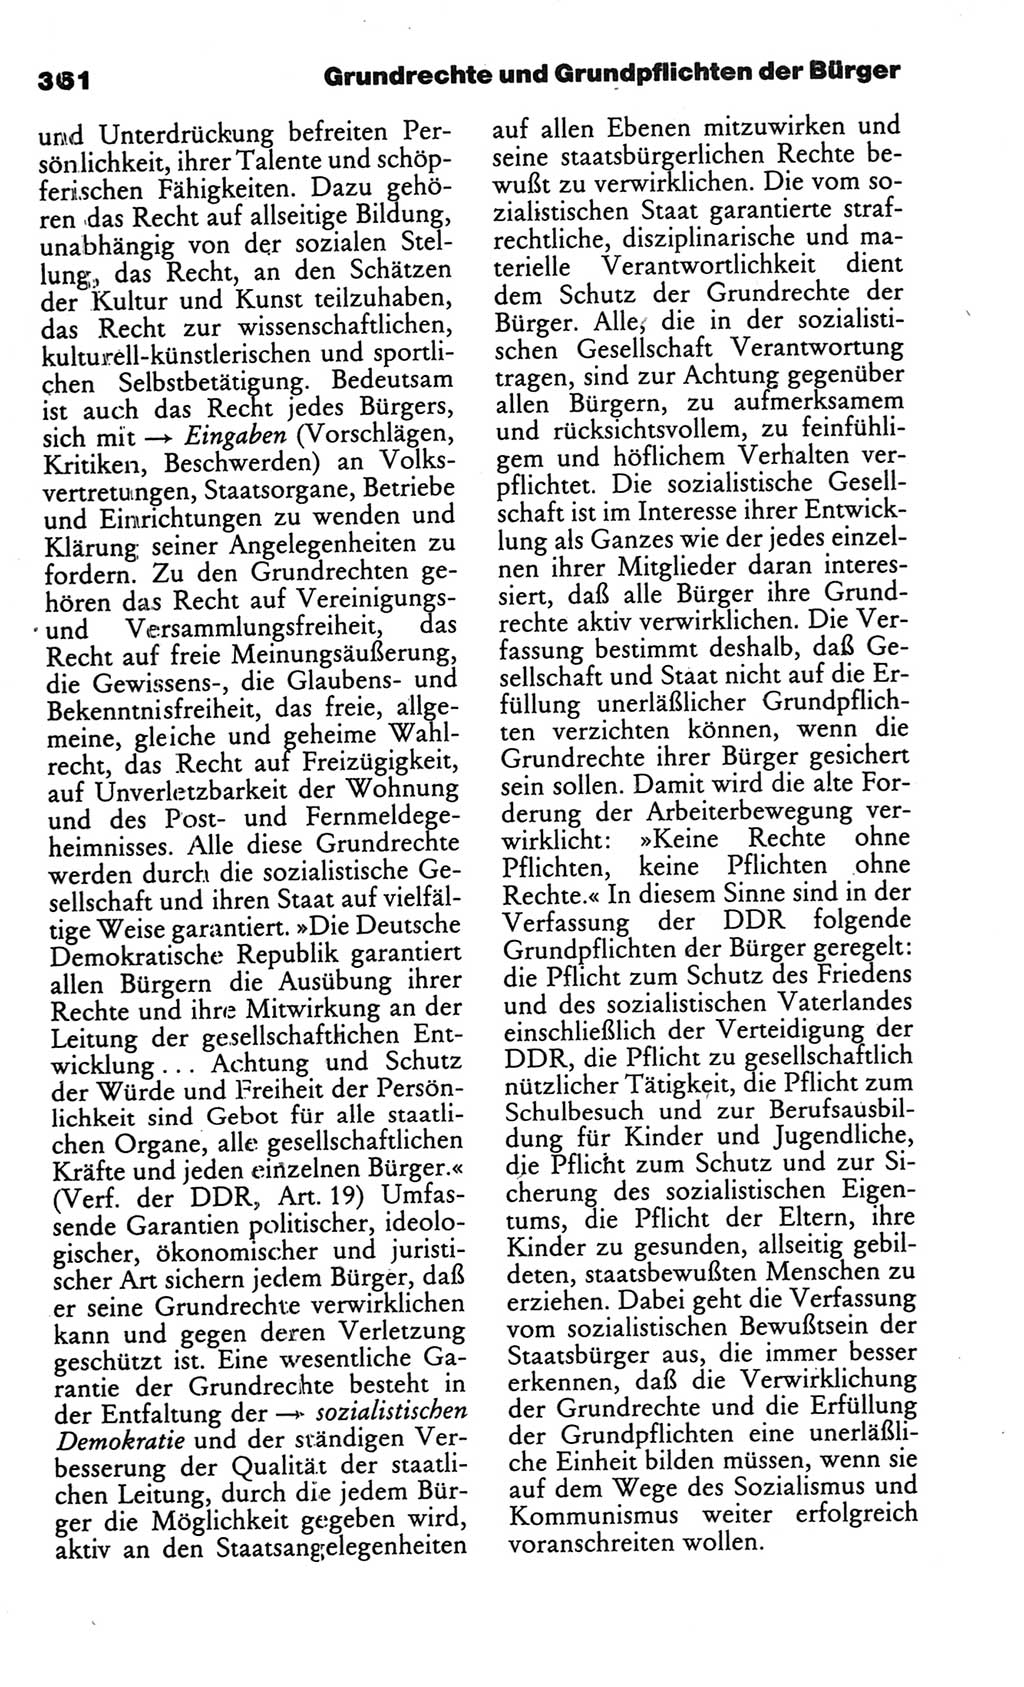 Kleines politisches Wörterbuch [Deutsche Demokratische Republik (DDR)] 1986, Seite 361 (Kl. pol. Wb. DDR 1986, S. 361)